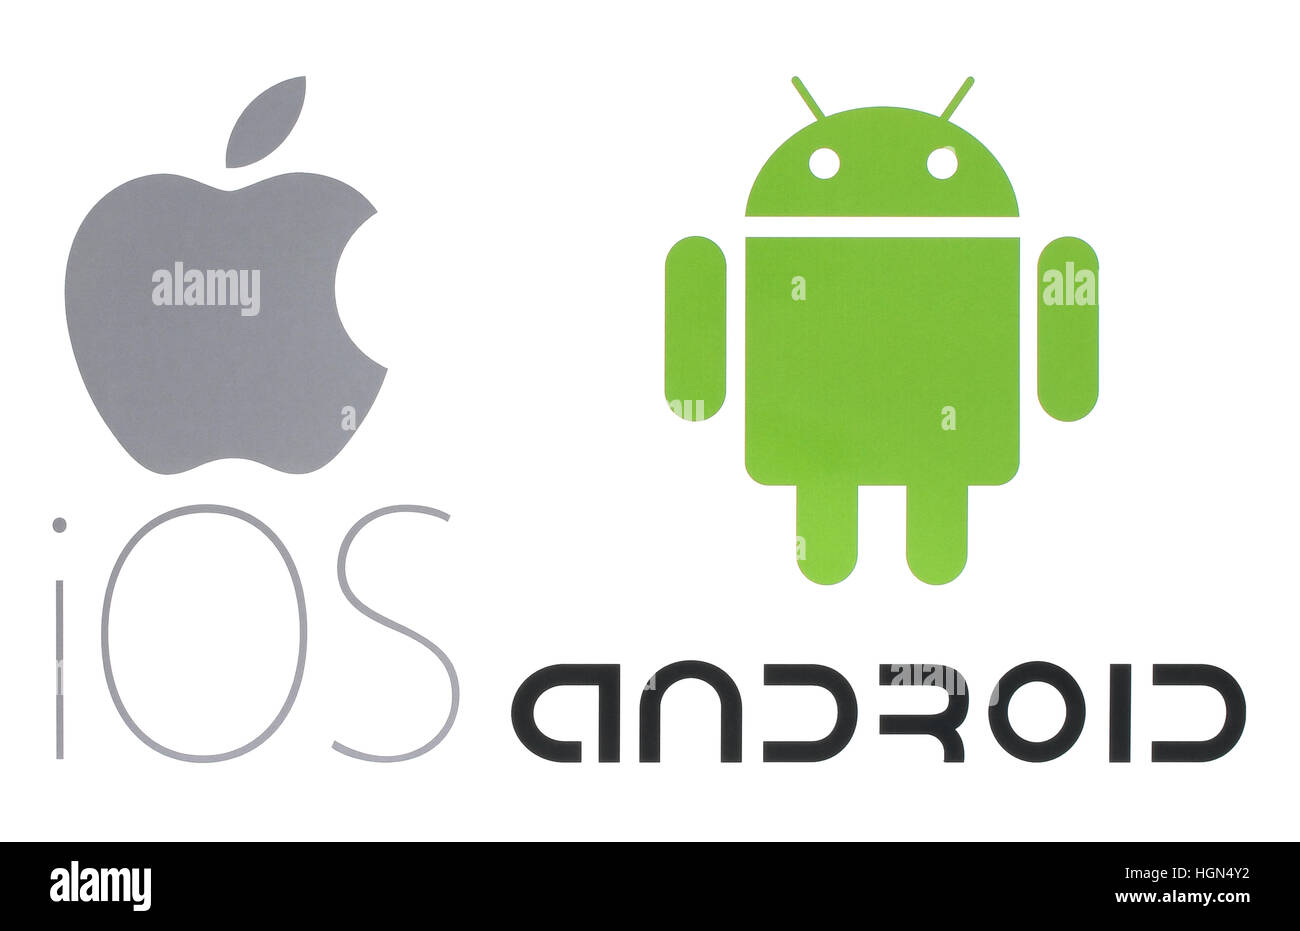 Kiew, Ukraine - 26. Mai 2016: Beliebtes Betriebssystem Logos auf Papier gedruckt: Apple Ios und Android Stockfoto